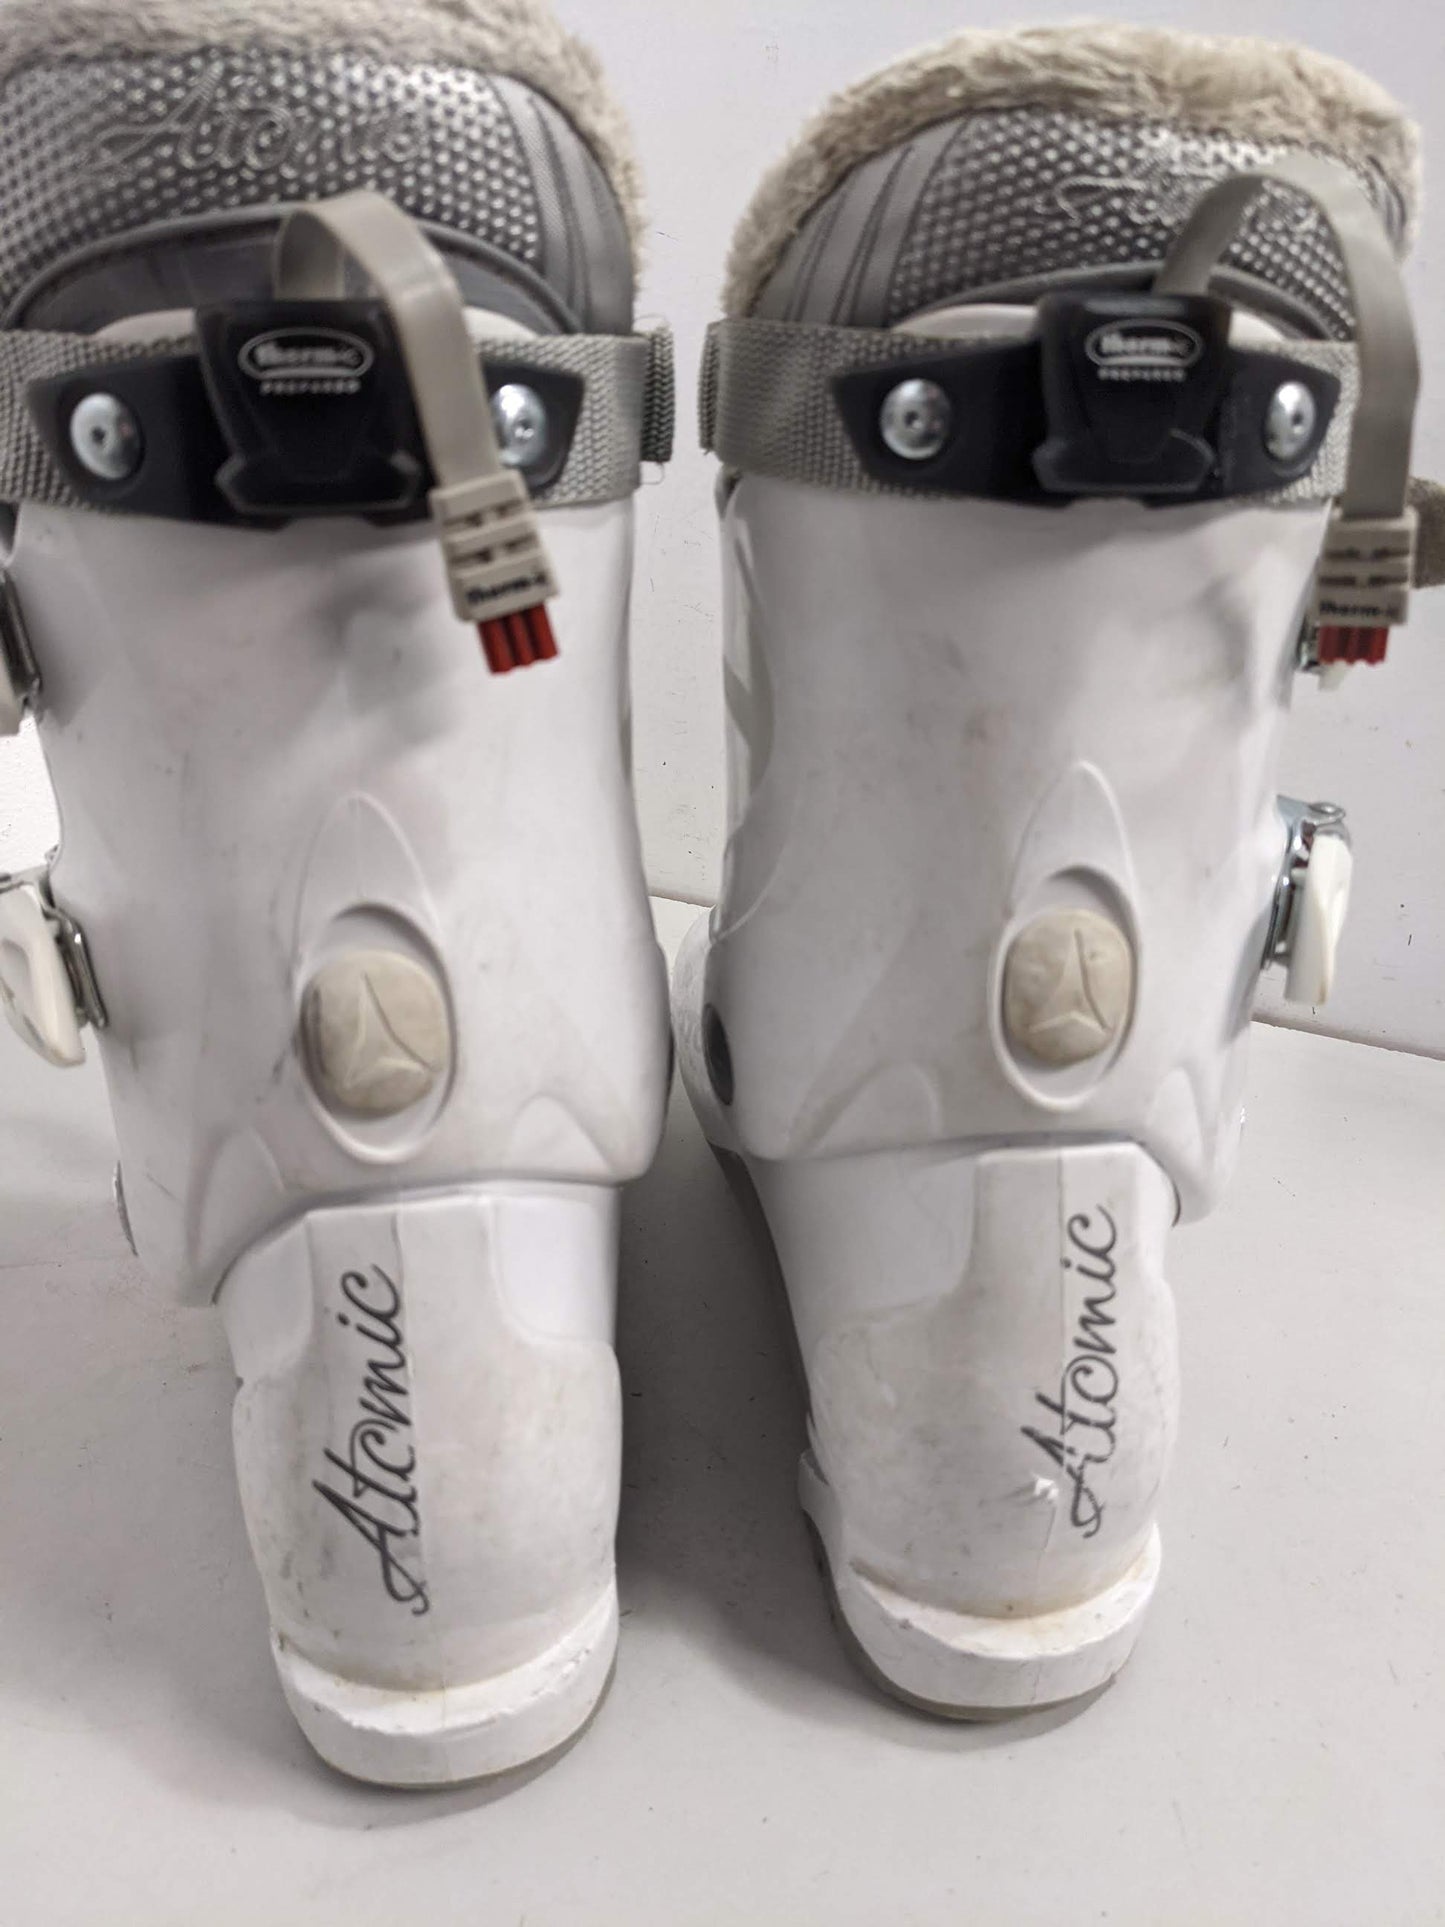 Atomic 70 Women's Ski Boots Size Mondo 24.5 White Used